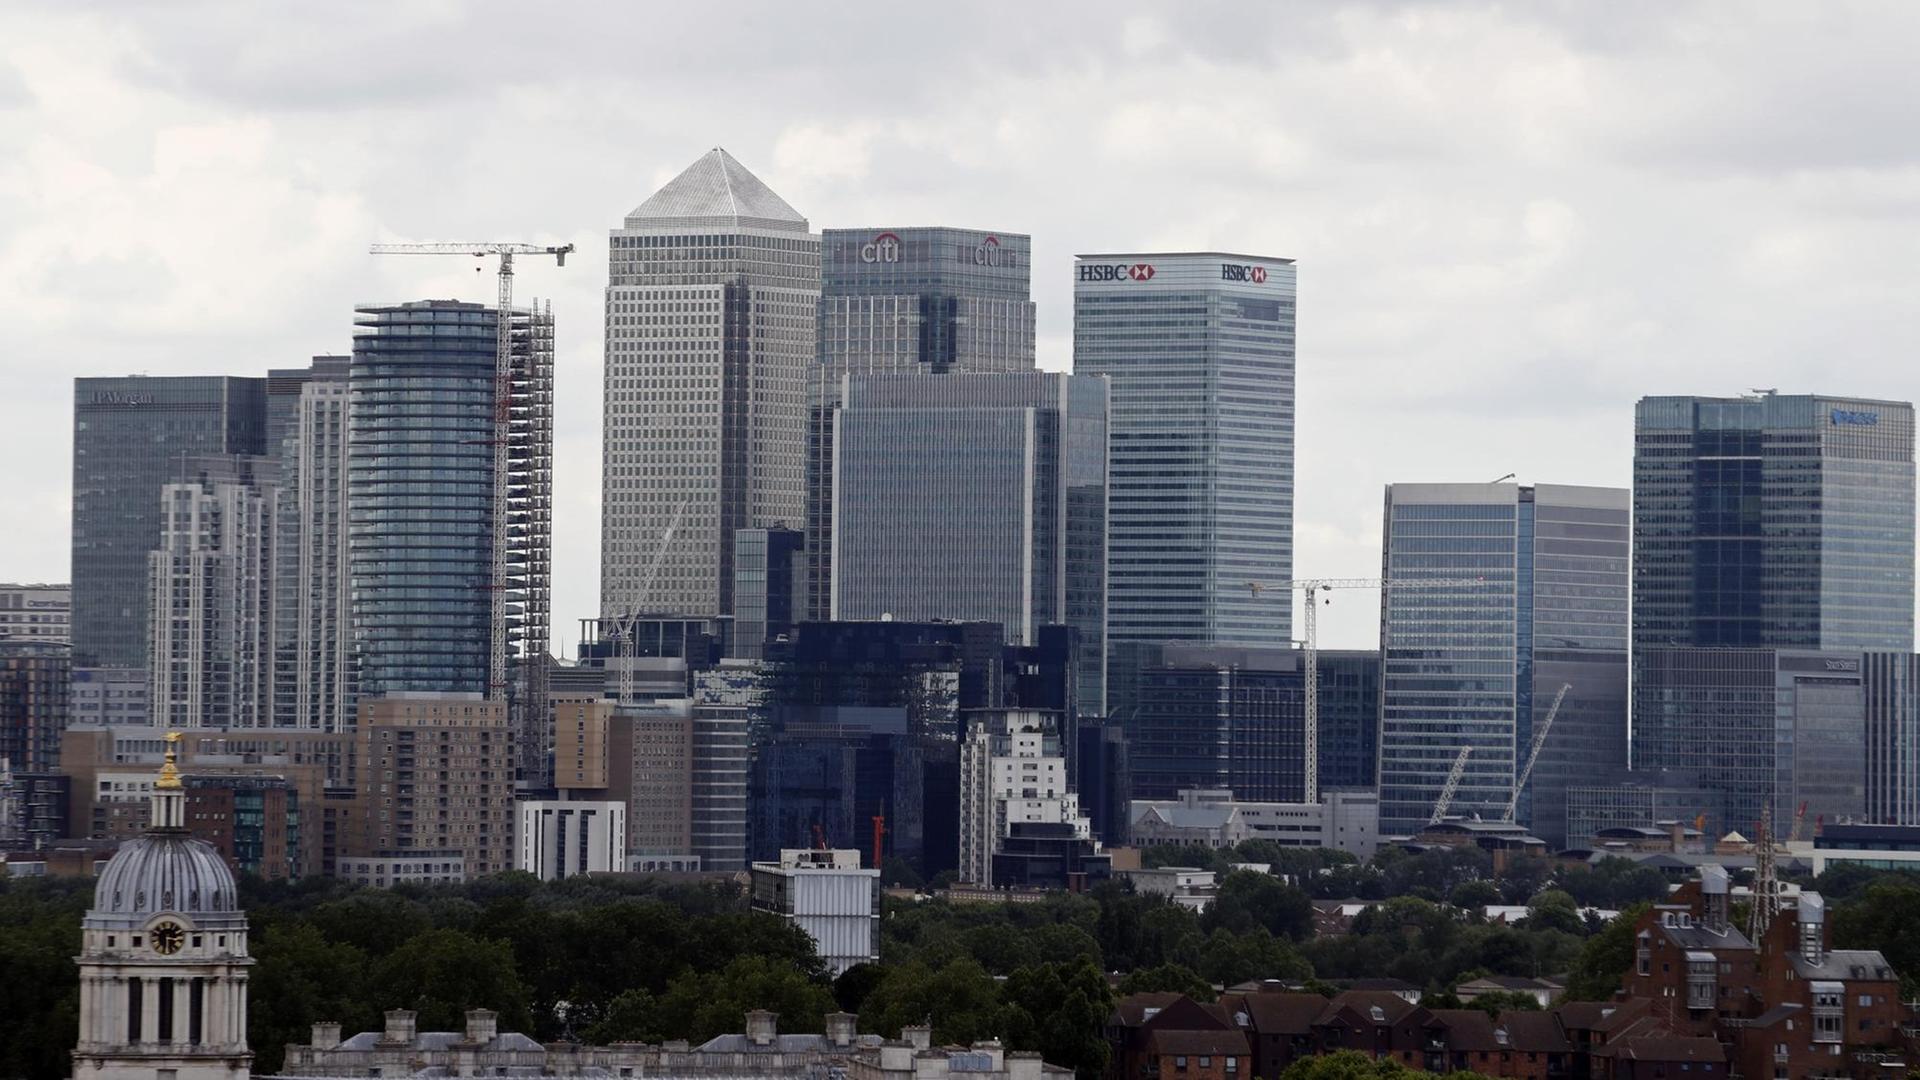 Blick auf Londons Finanzdistrikt mit den Bankentürmen von unter anderem HSBC, Citigroup, JPMorgan Chase, Barclays.